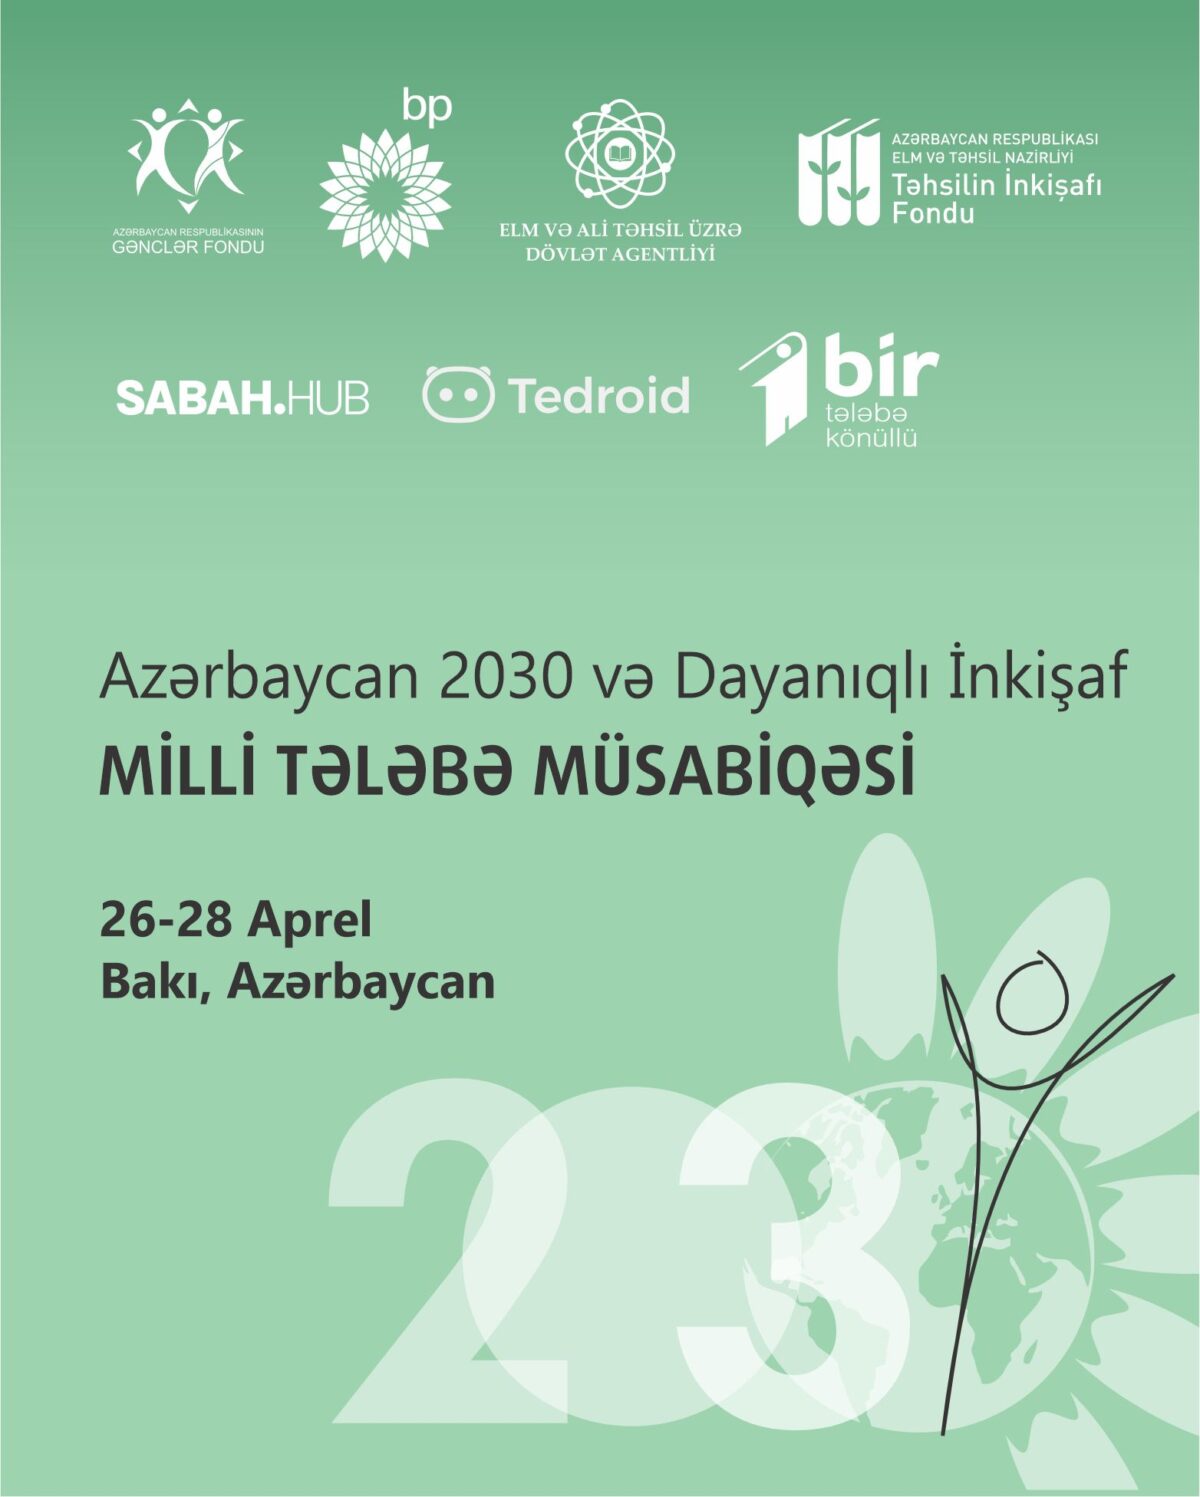 “Azərbaycan 2030 və Dayanıqlı İnkişaf” Milli Tələbə Müsabiqəsi elan edilir.